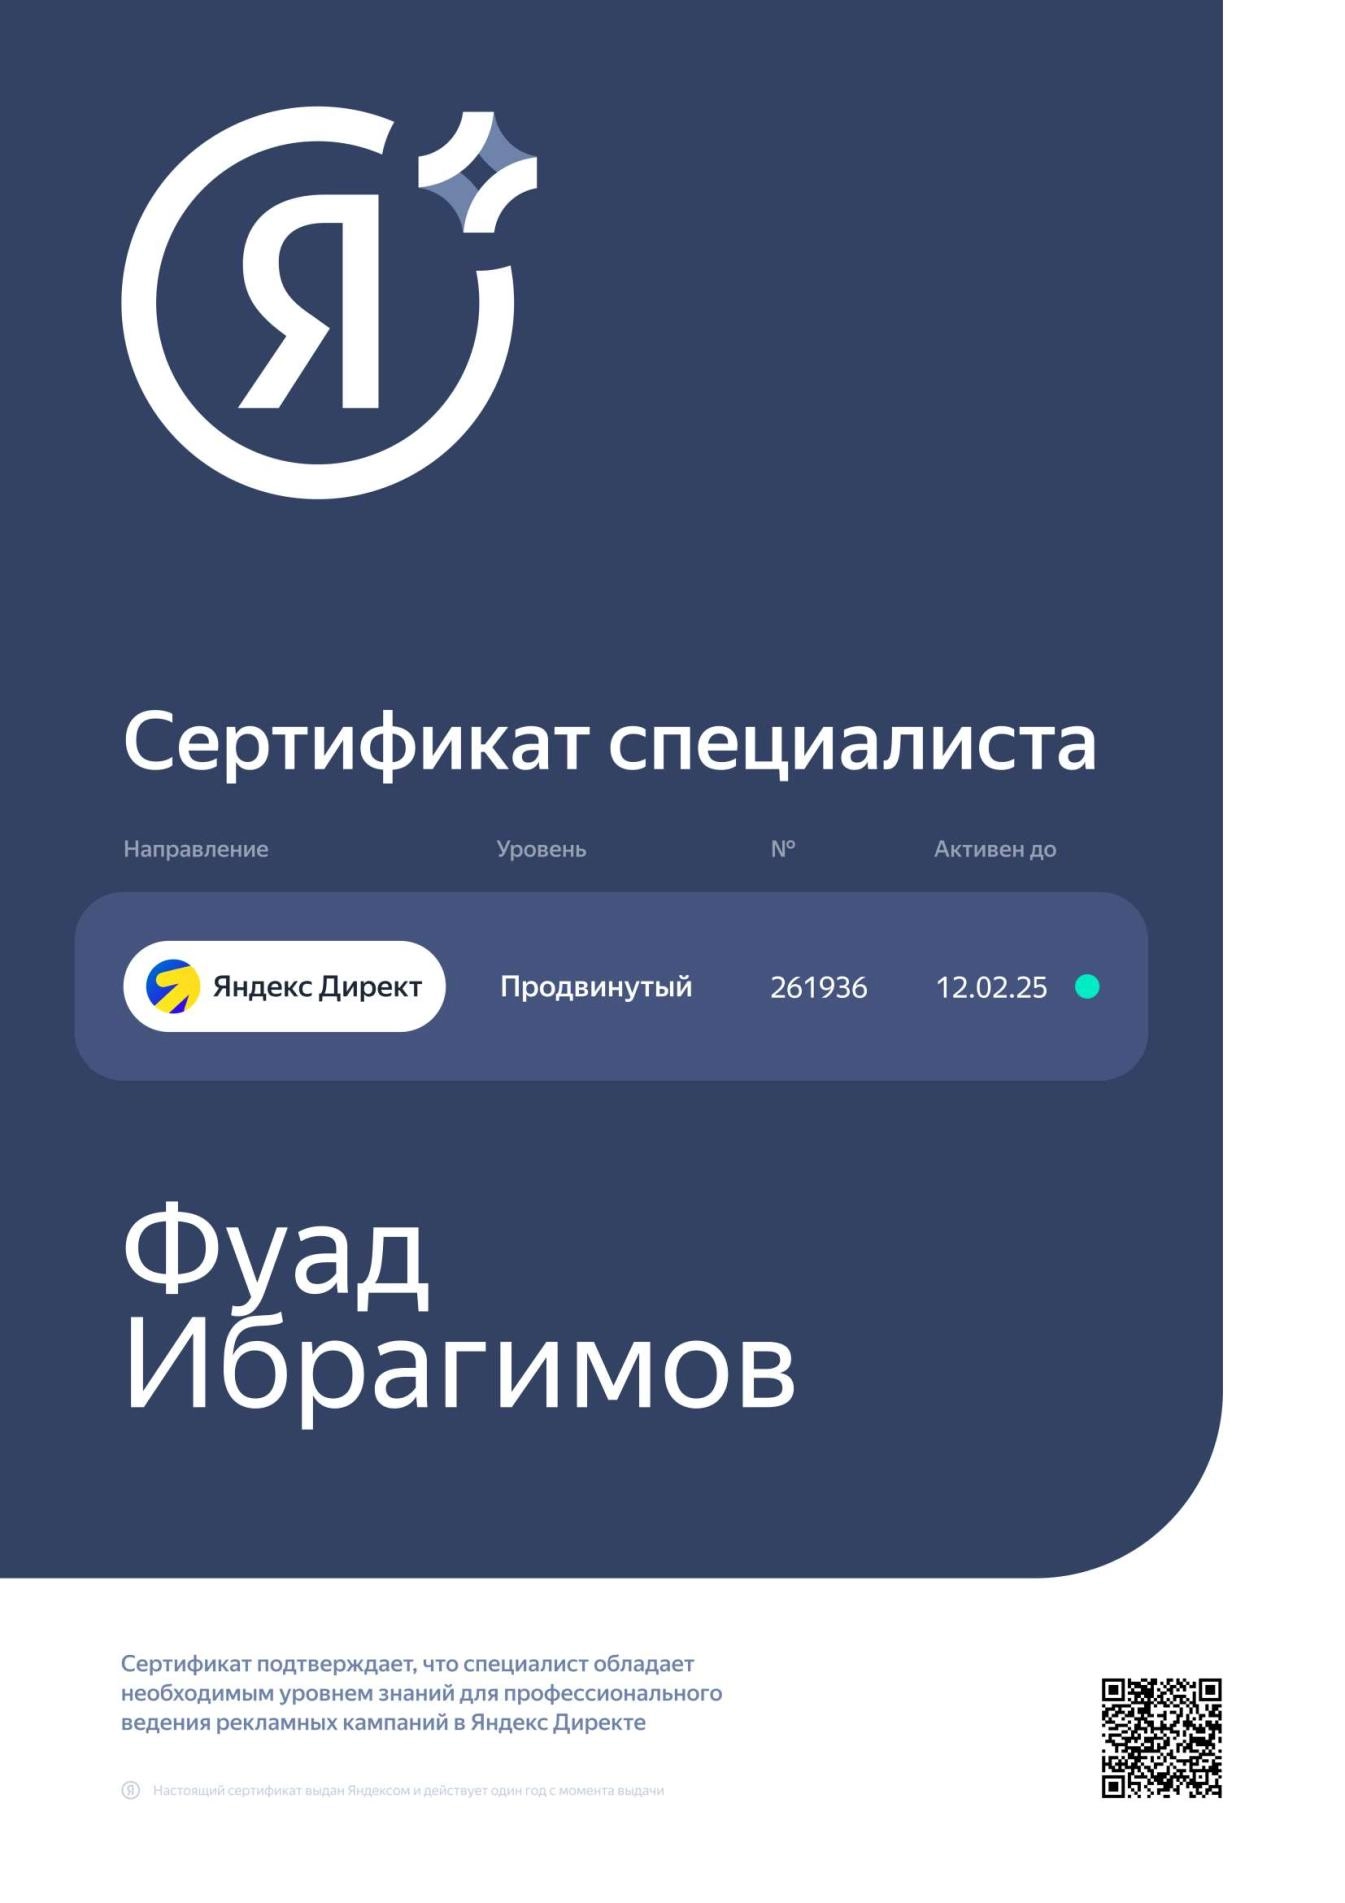 Сертификат специалиста Продвинутый. Яндекс Директ